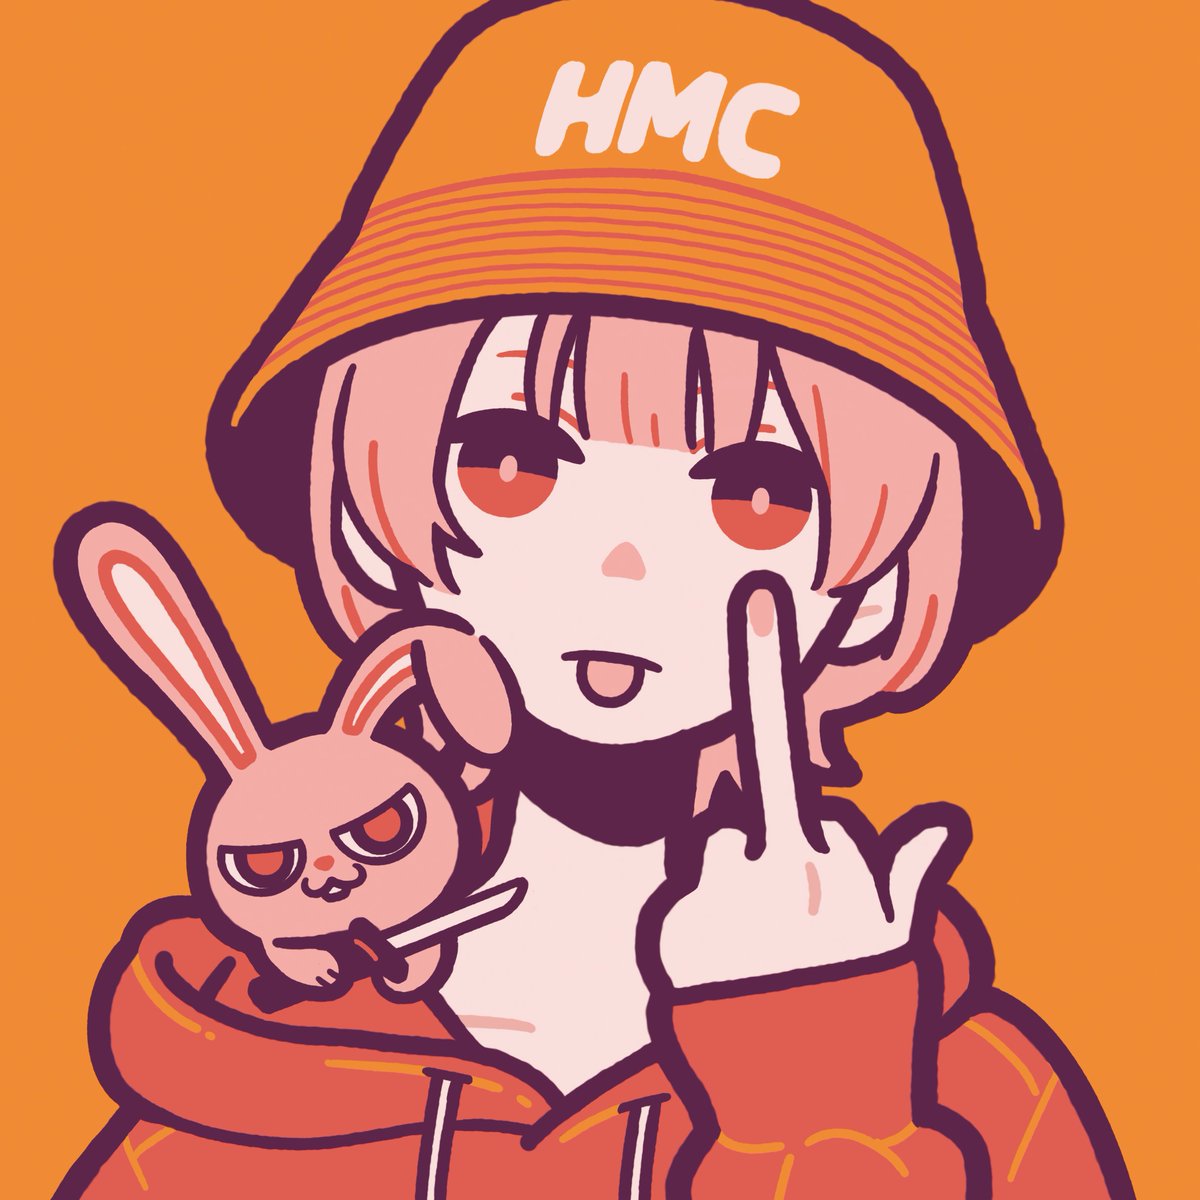 「HATE MONDAY CLUB 」|美好よしみのイラスト